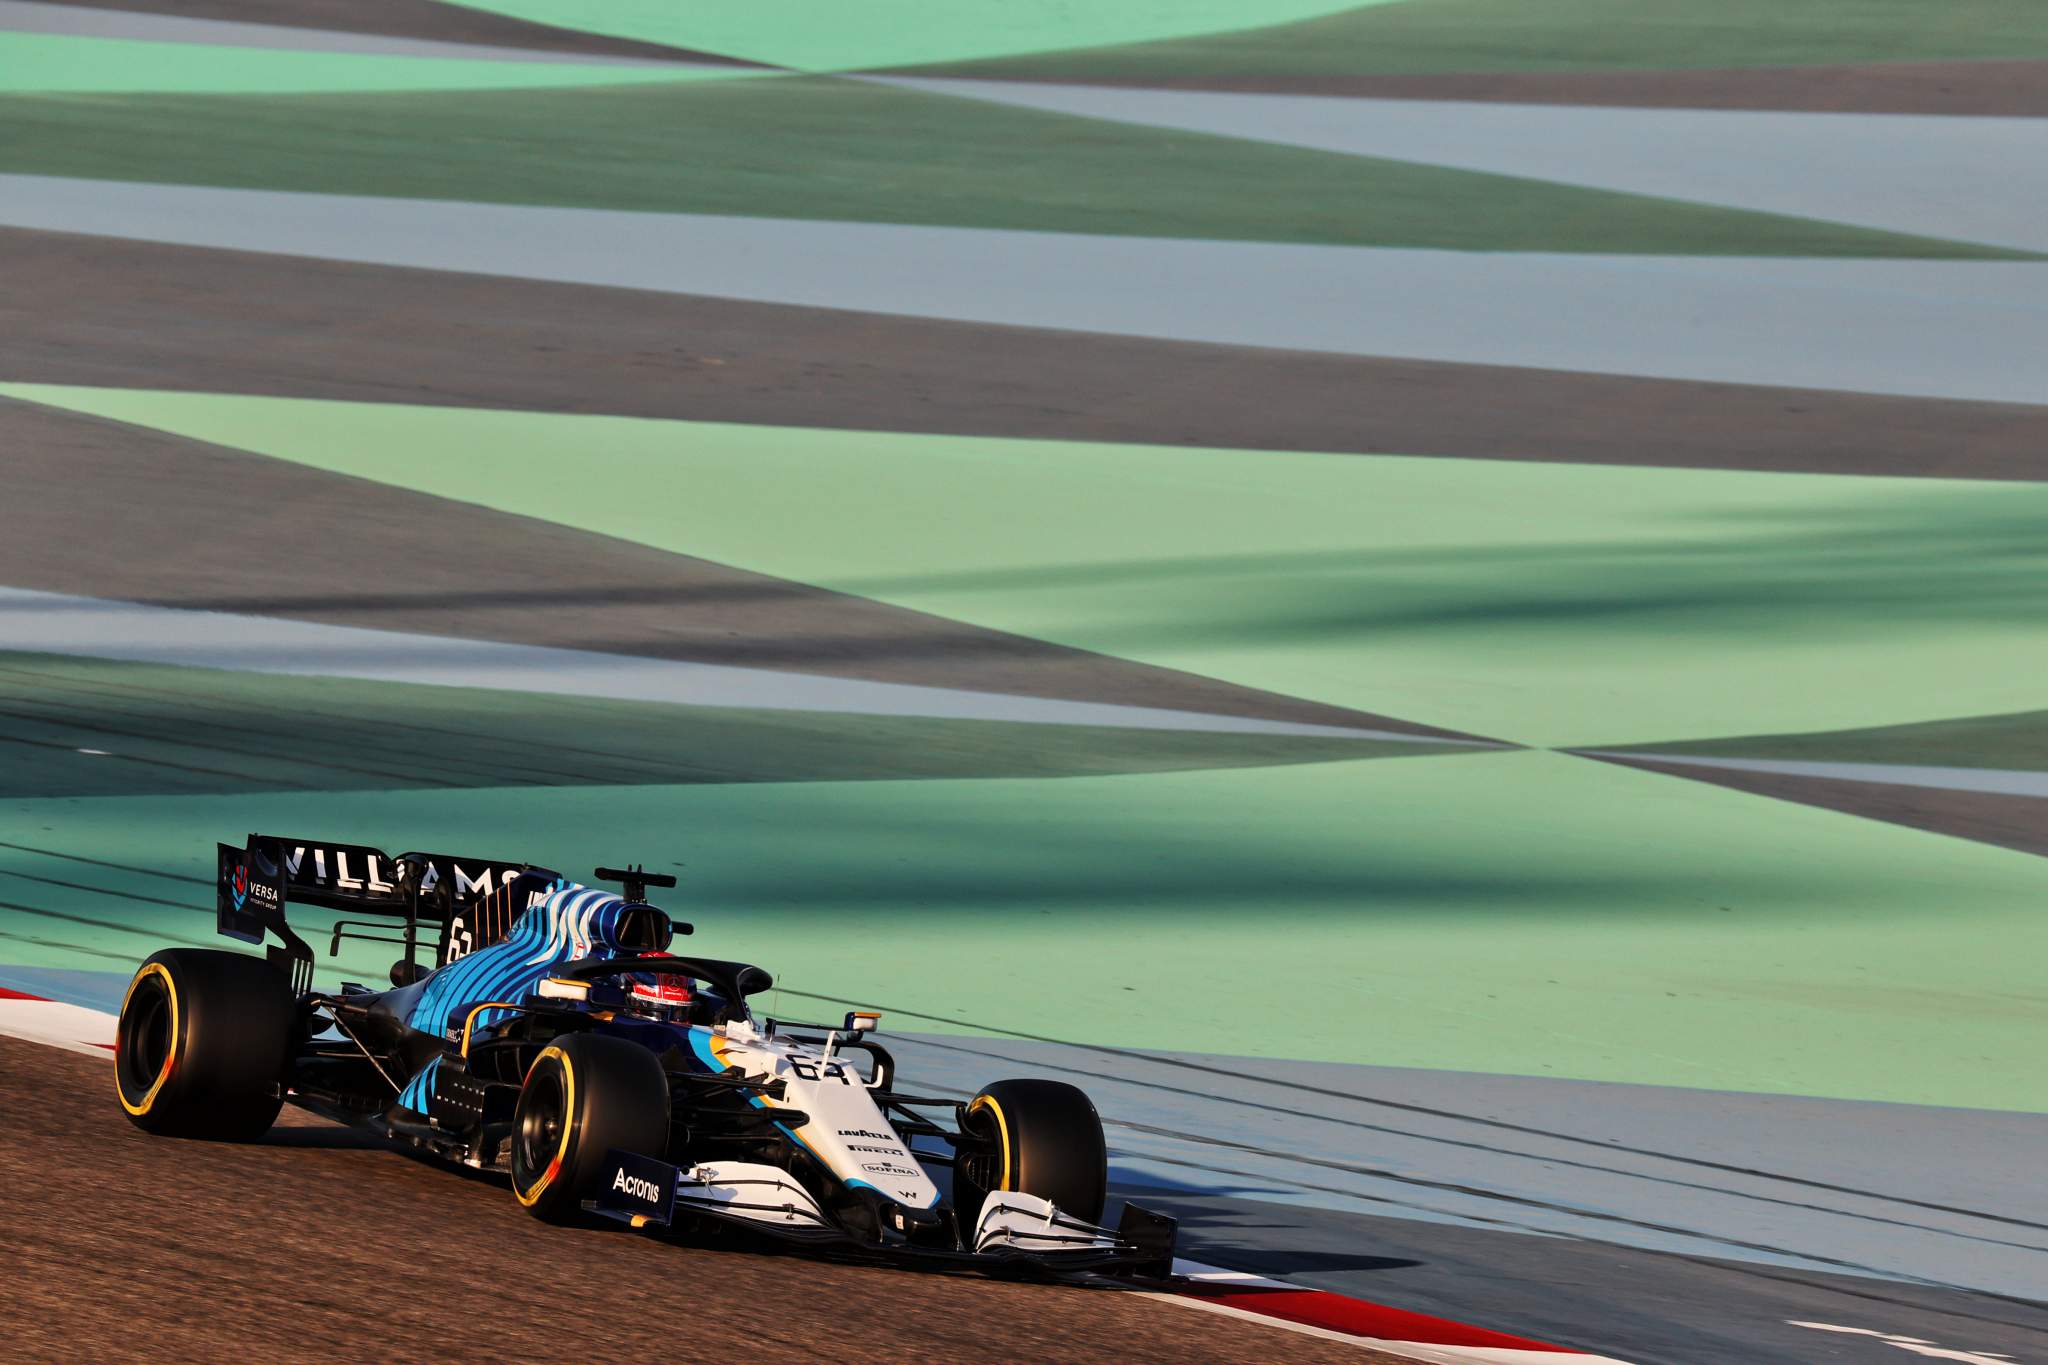 Скорость автомобиля формула 1. Williams f1 2021. Формула 1 Williams. Вильямс формулы 1 Рассел. F1 2021 Williams Skin.